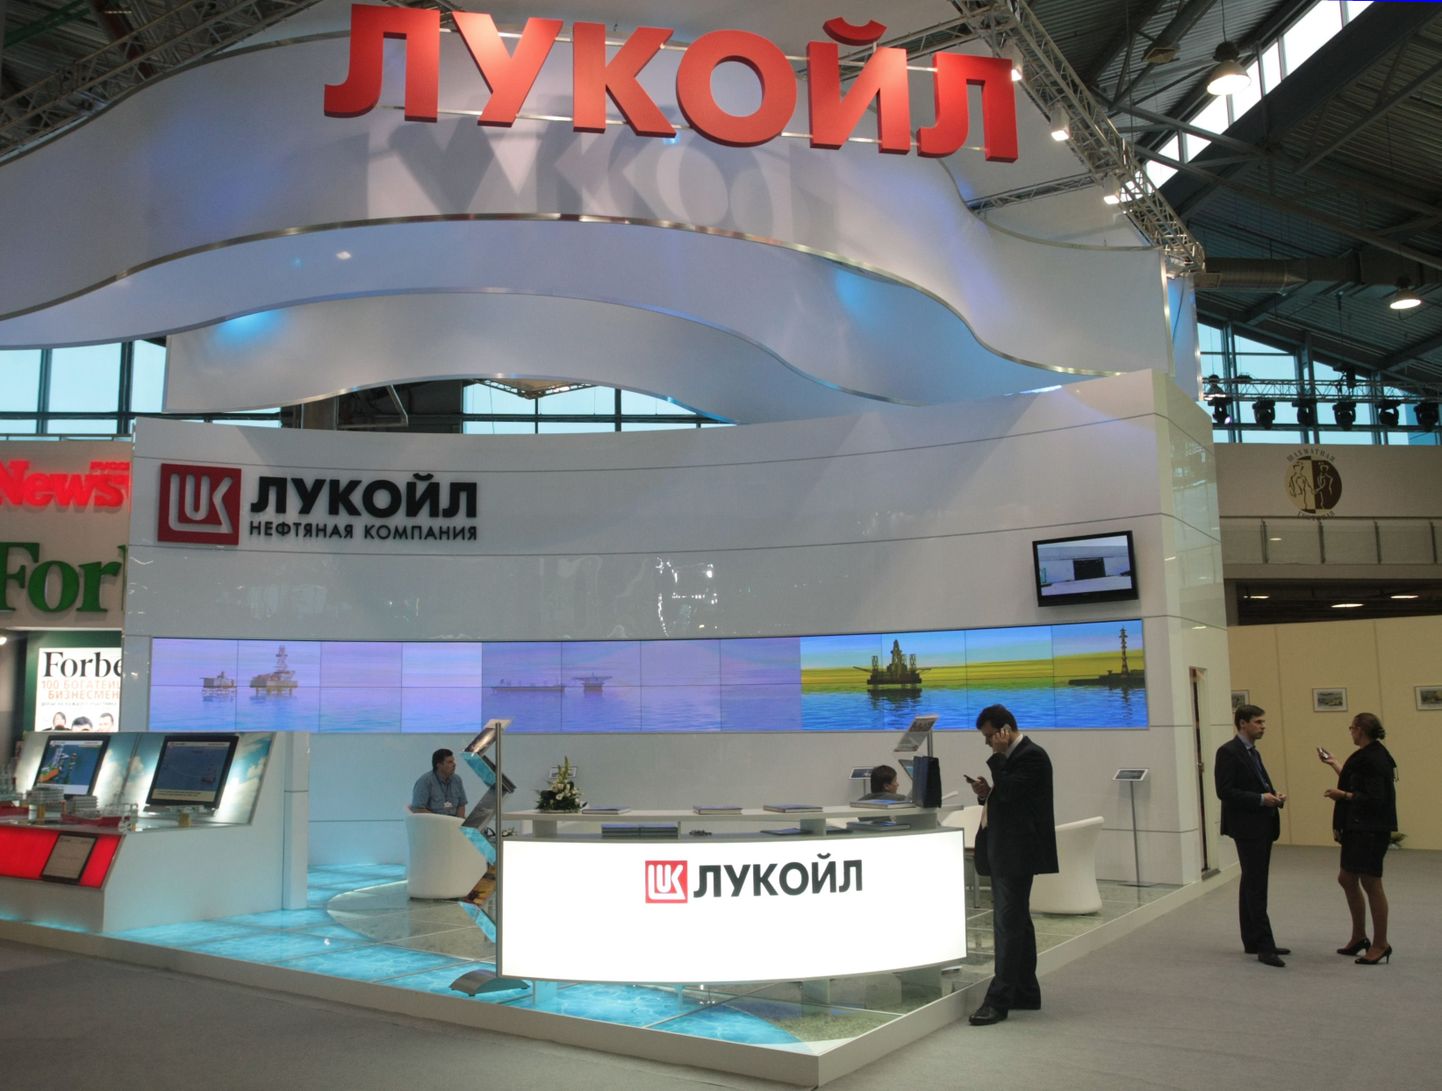 Lukoili väljapanek Peterburi majandusfoorumil juunis 2009.